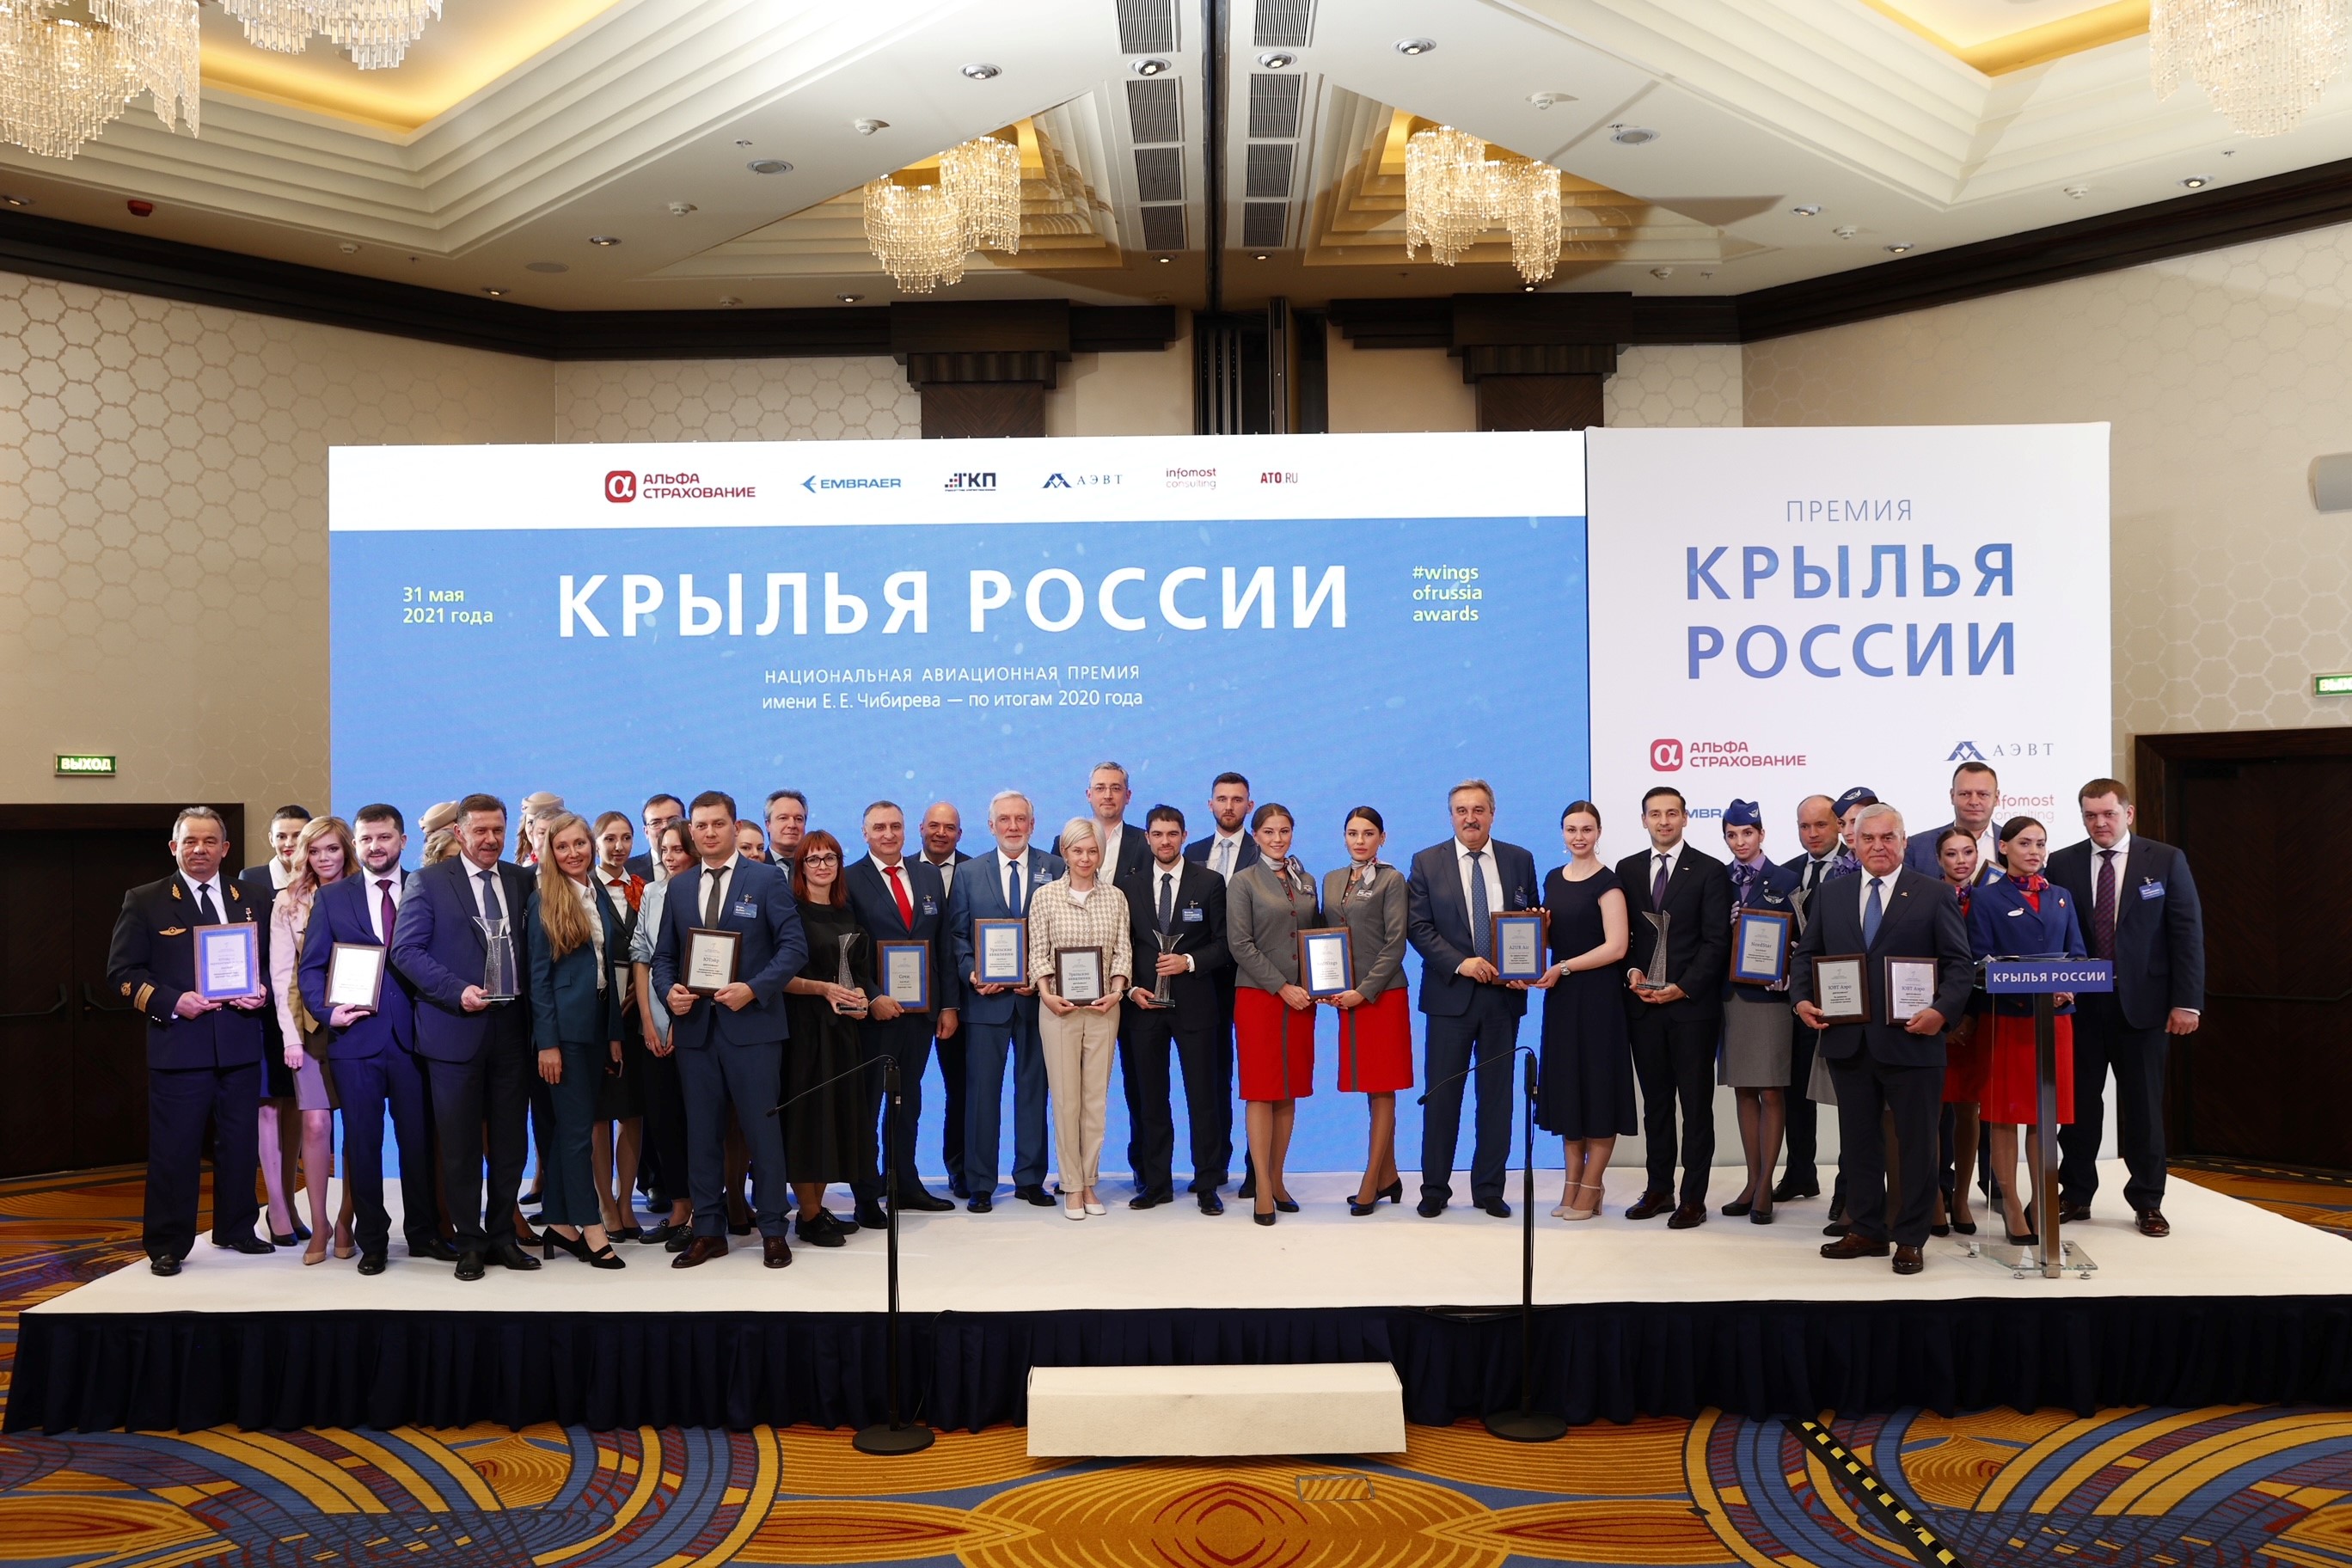 AZUR air, Новости, 01 июня 2021, AZUR air получила специальный диплом в рамках премии «Крылья России»